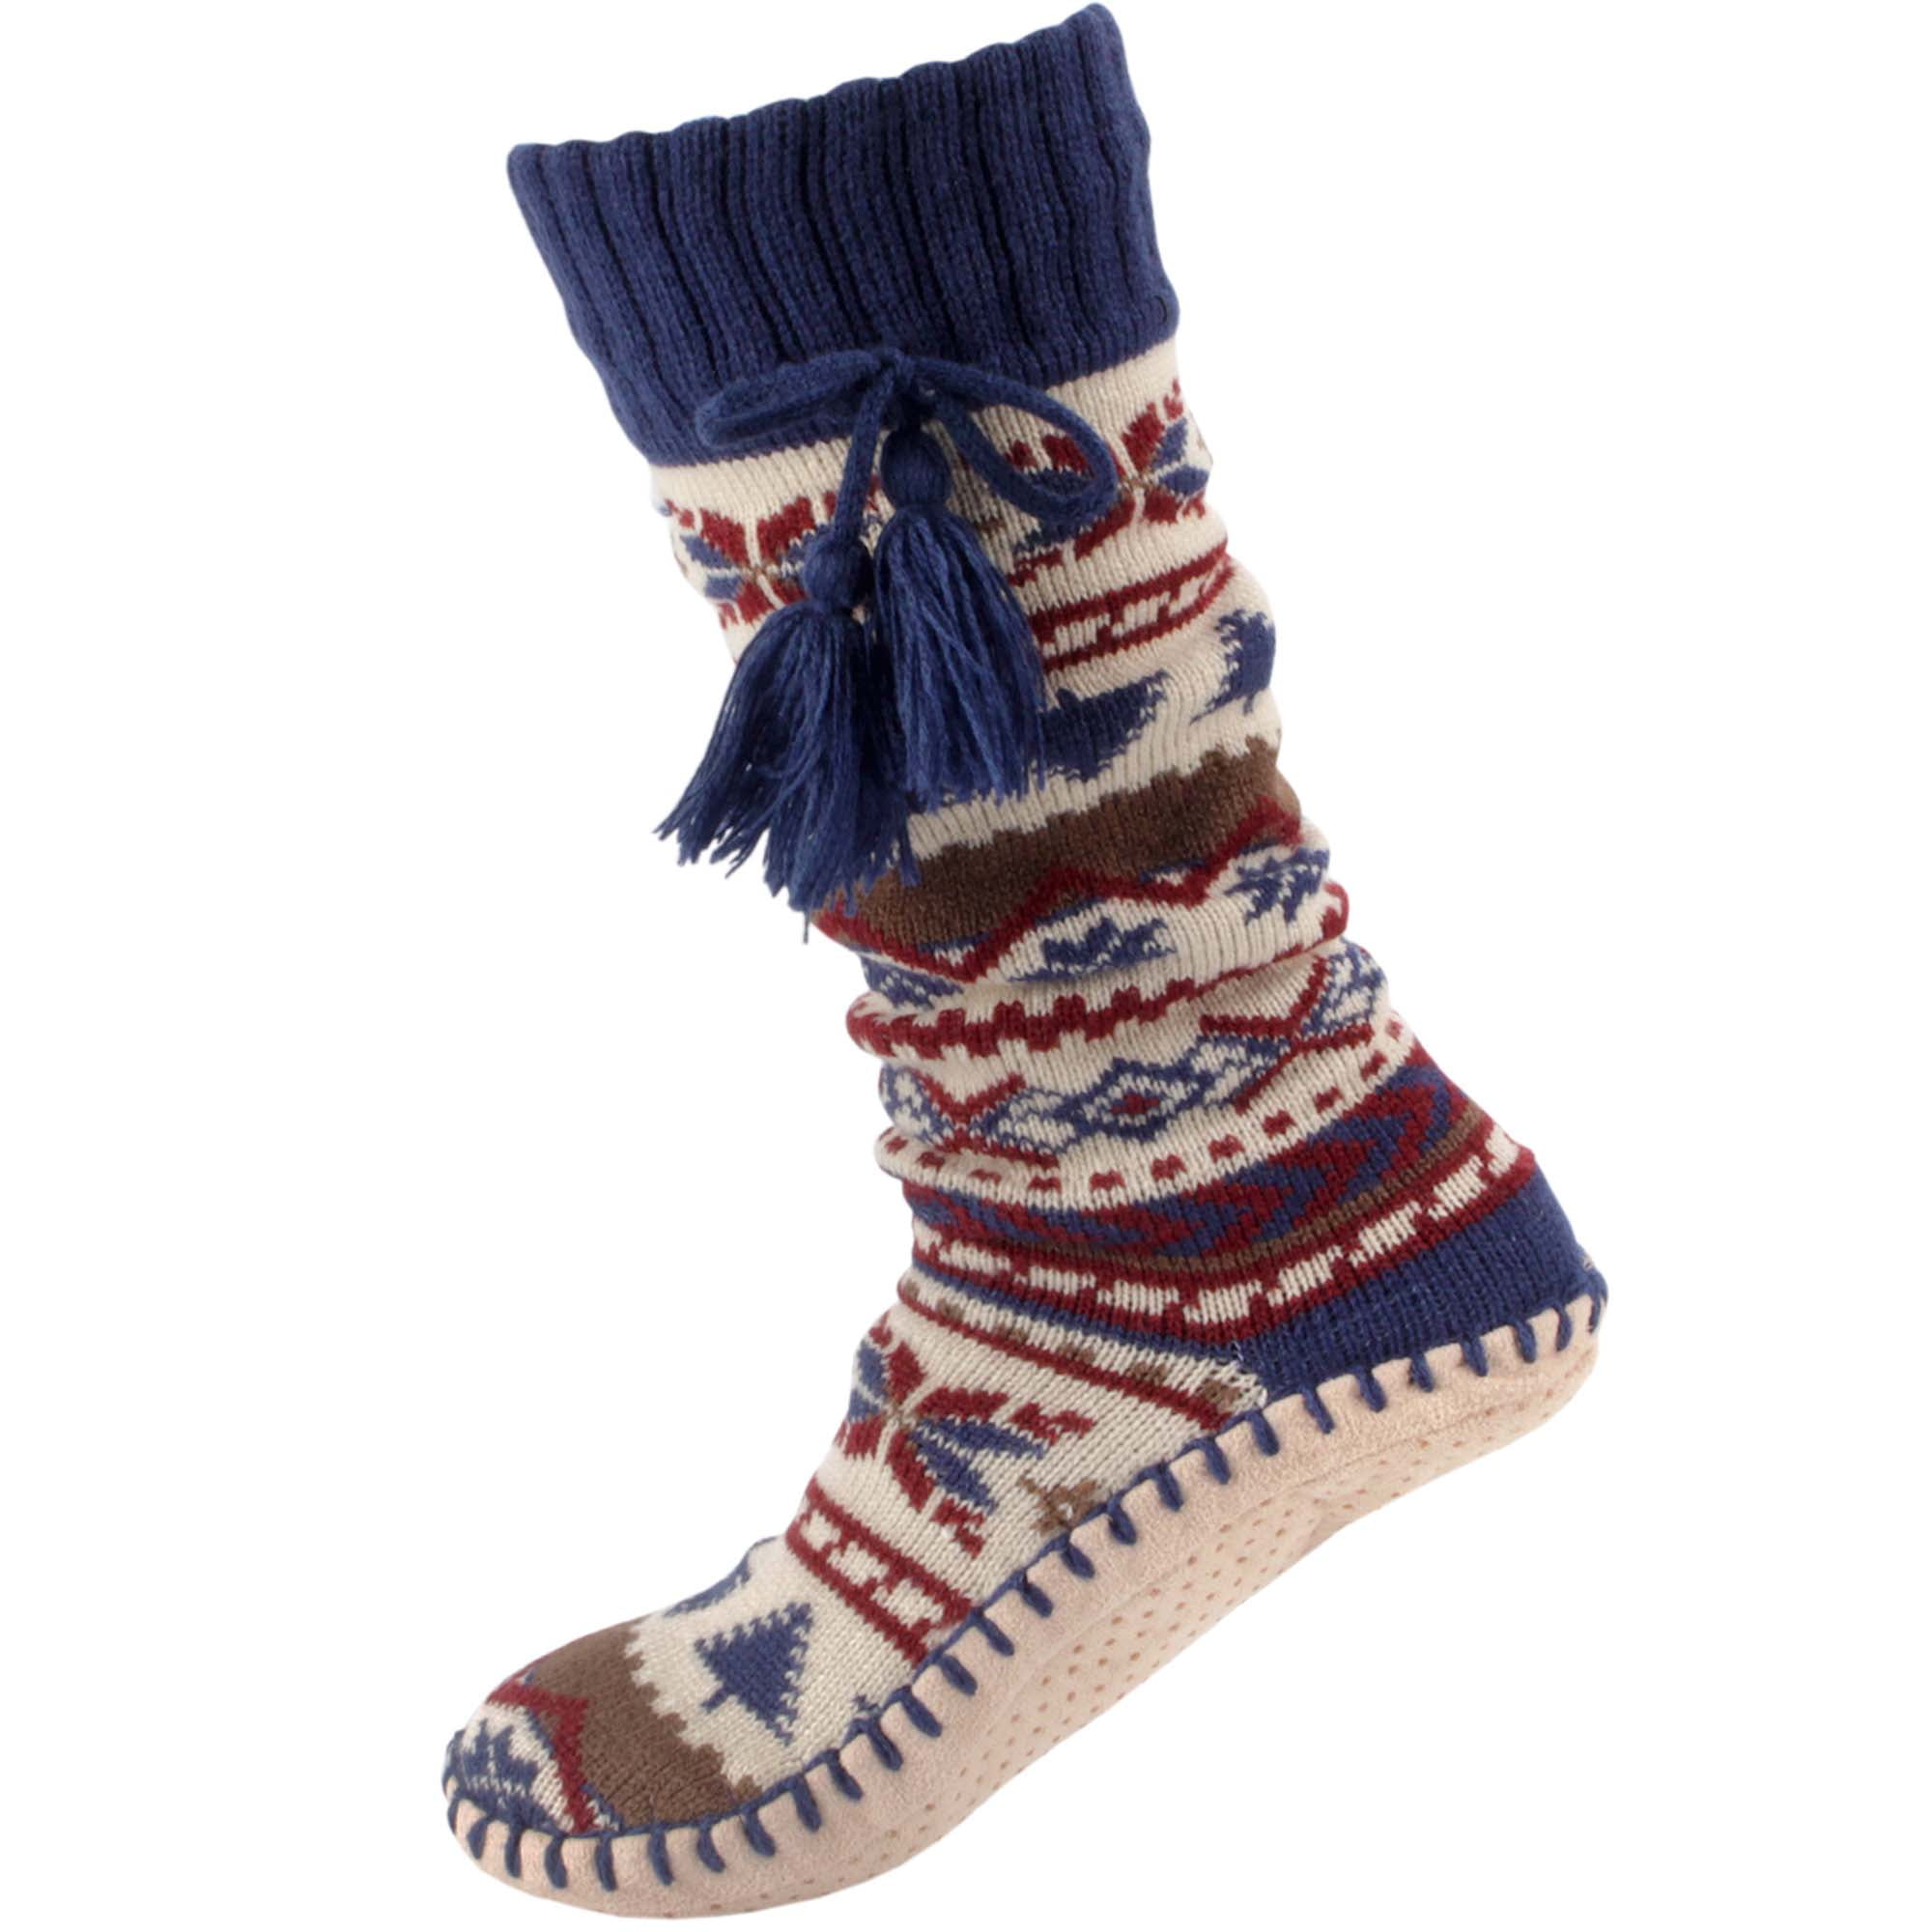 Women's Soft Fuzzy Furry Gripper Slipper Socks with Tassel - Multi